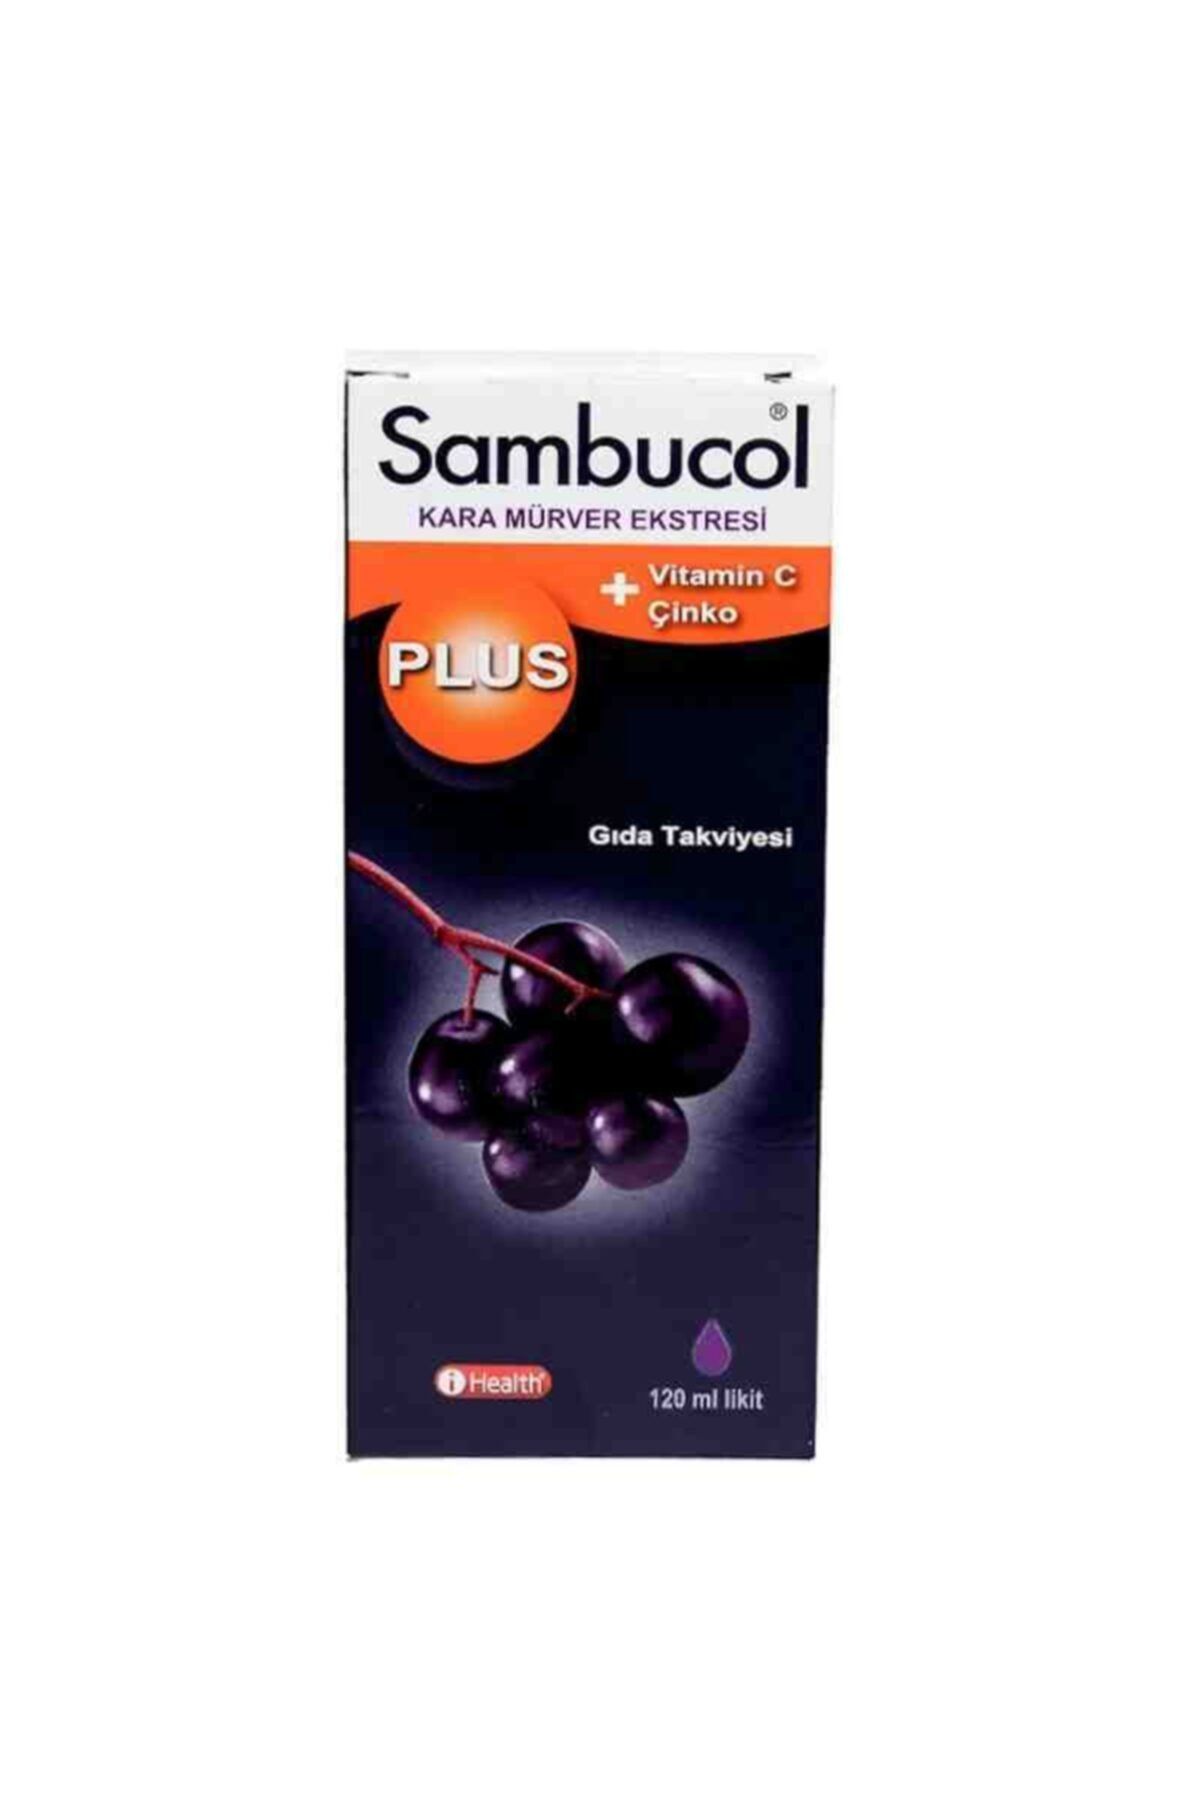 Sambucol Plus Kara Mürver C Vitamini Ve Çinko Içeren Takviye Edici Gıda 120 Ml